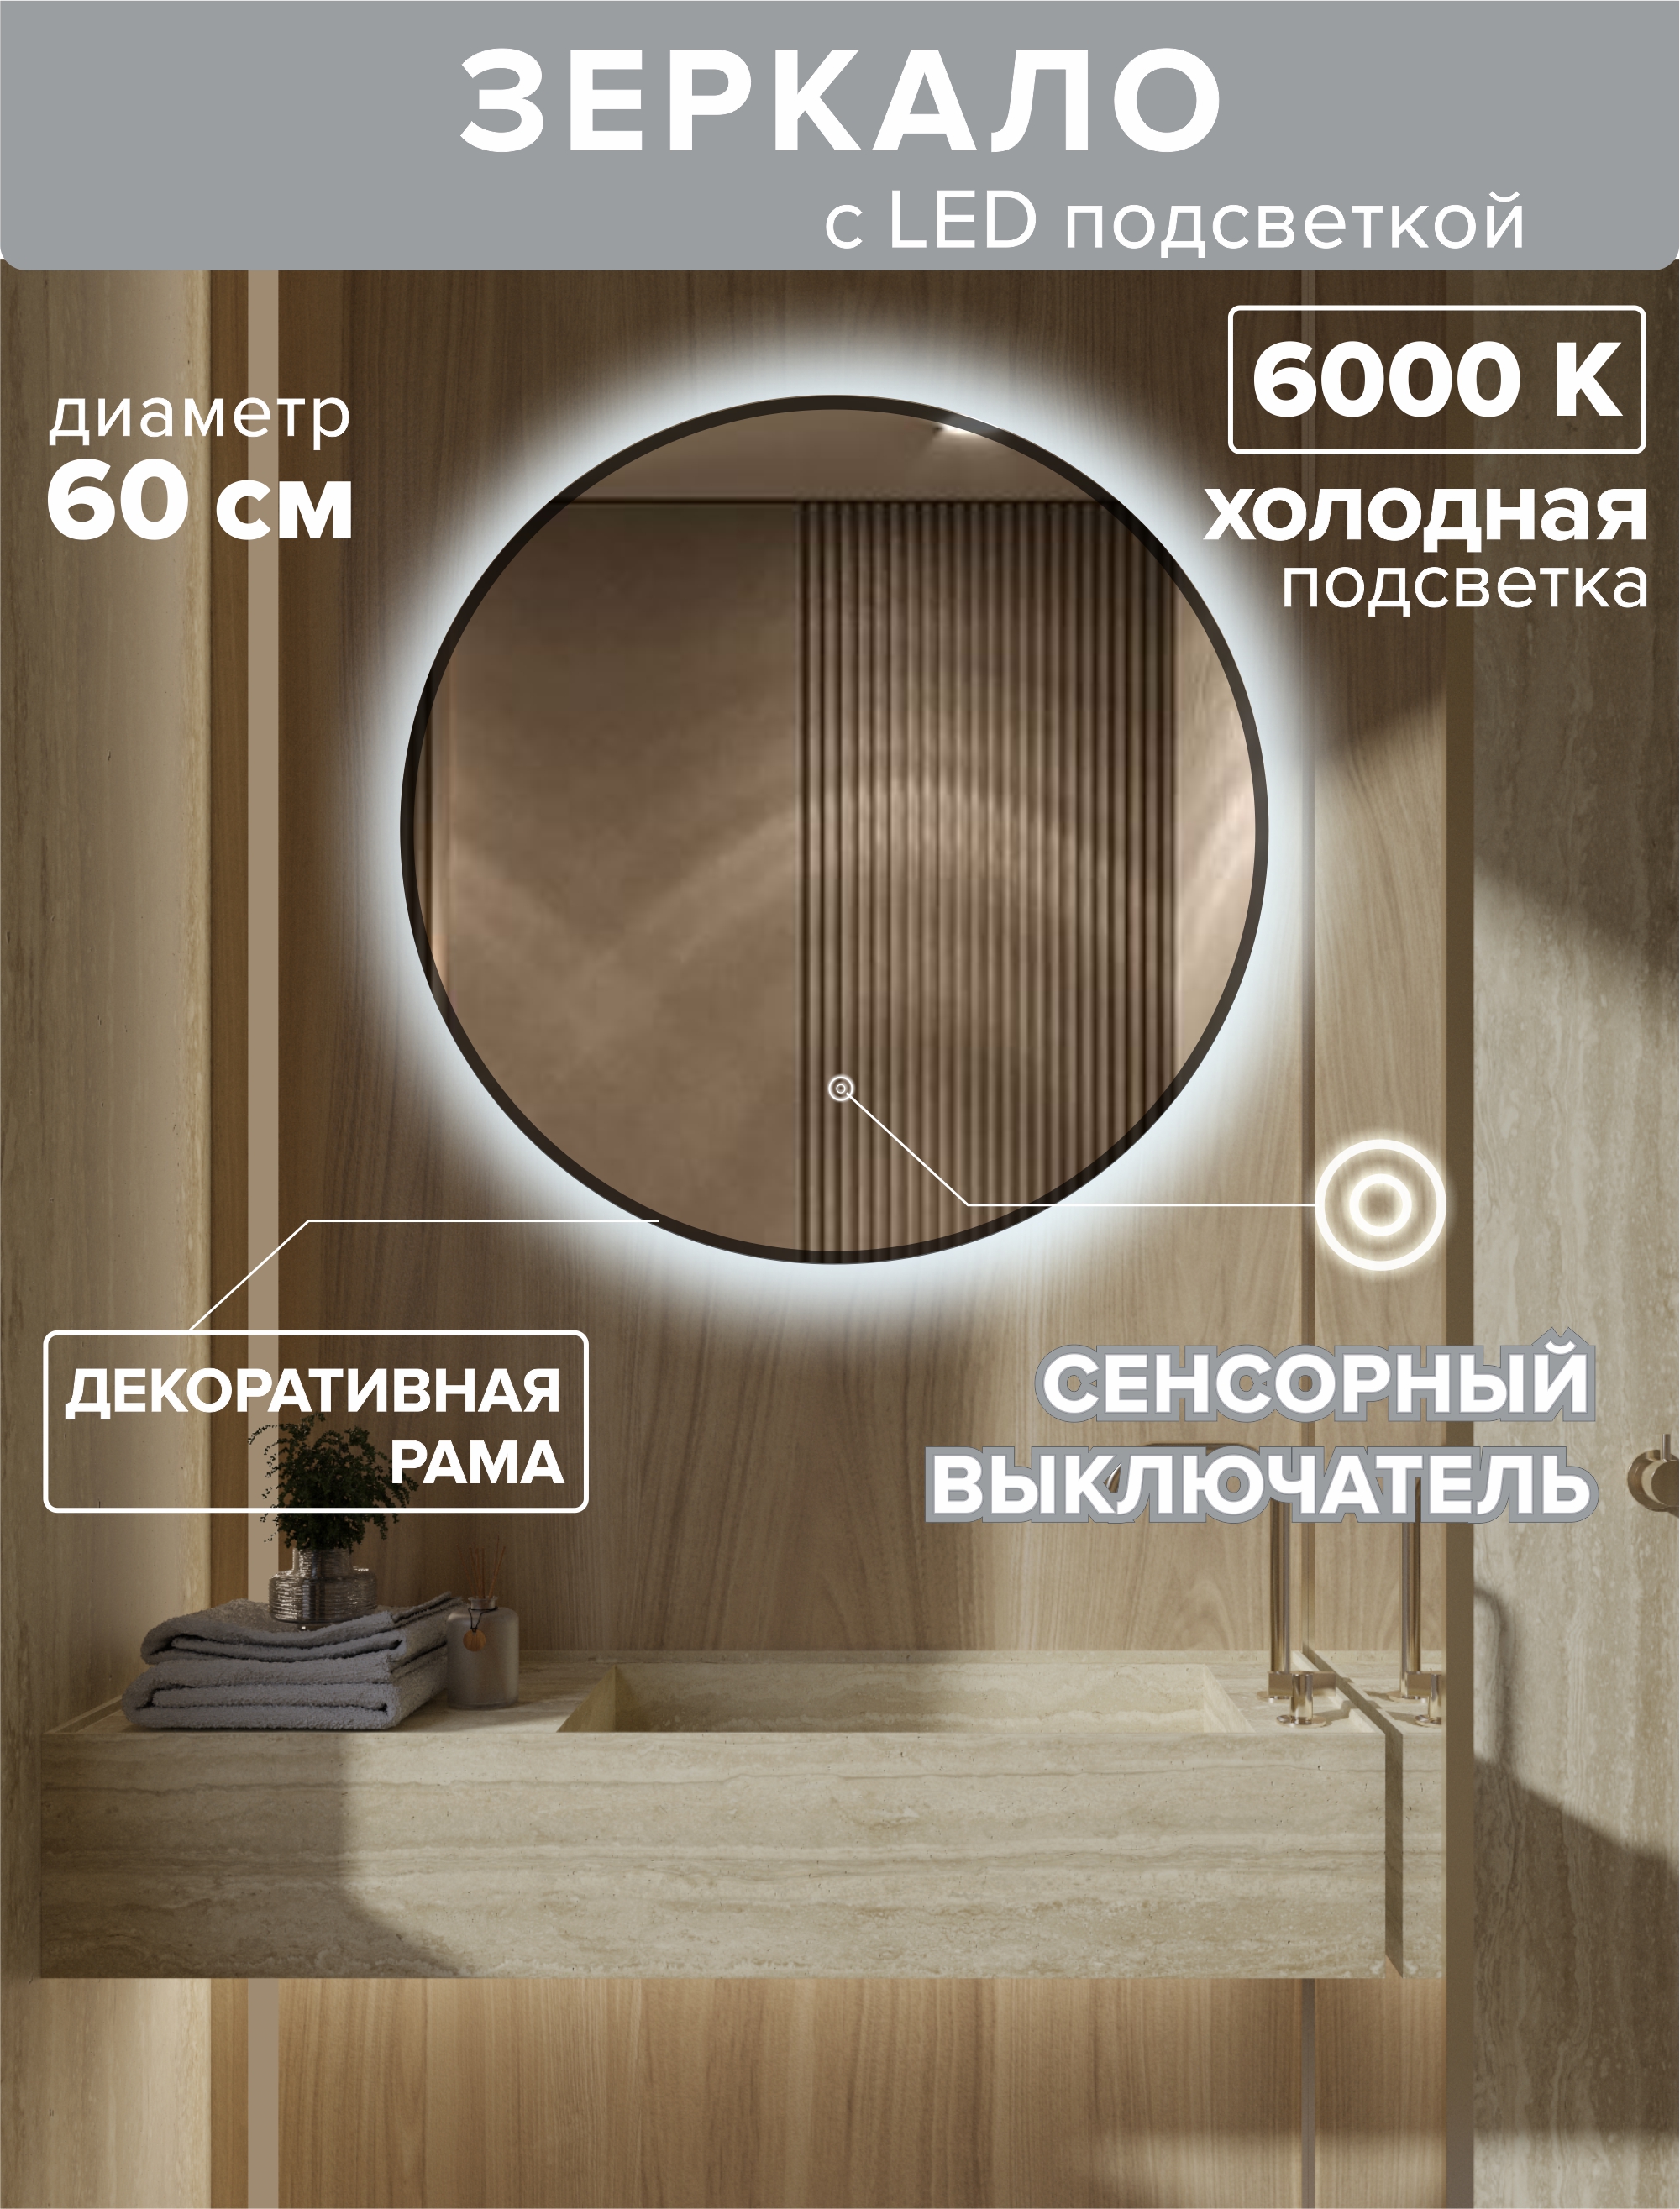 Зеркало для ванной Alfa Mirrors с холодной подсветкой 6000К с рамой круг 60 см, MNa-6h-ram зеркало alfa mirrors с холодной подсветкой 6000к обогрев прямоугольное 60 80см mniko 68ah